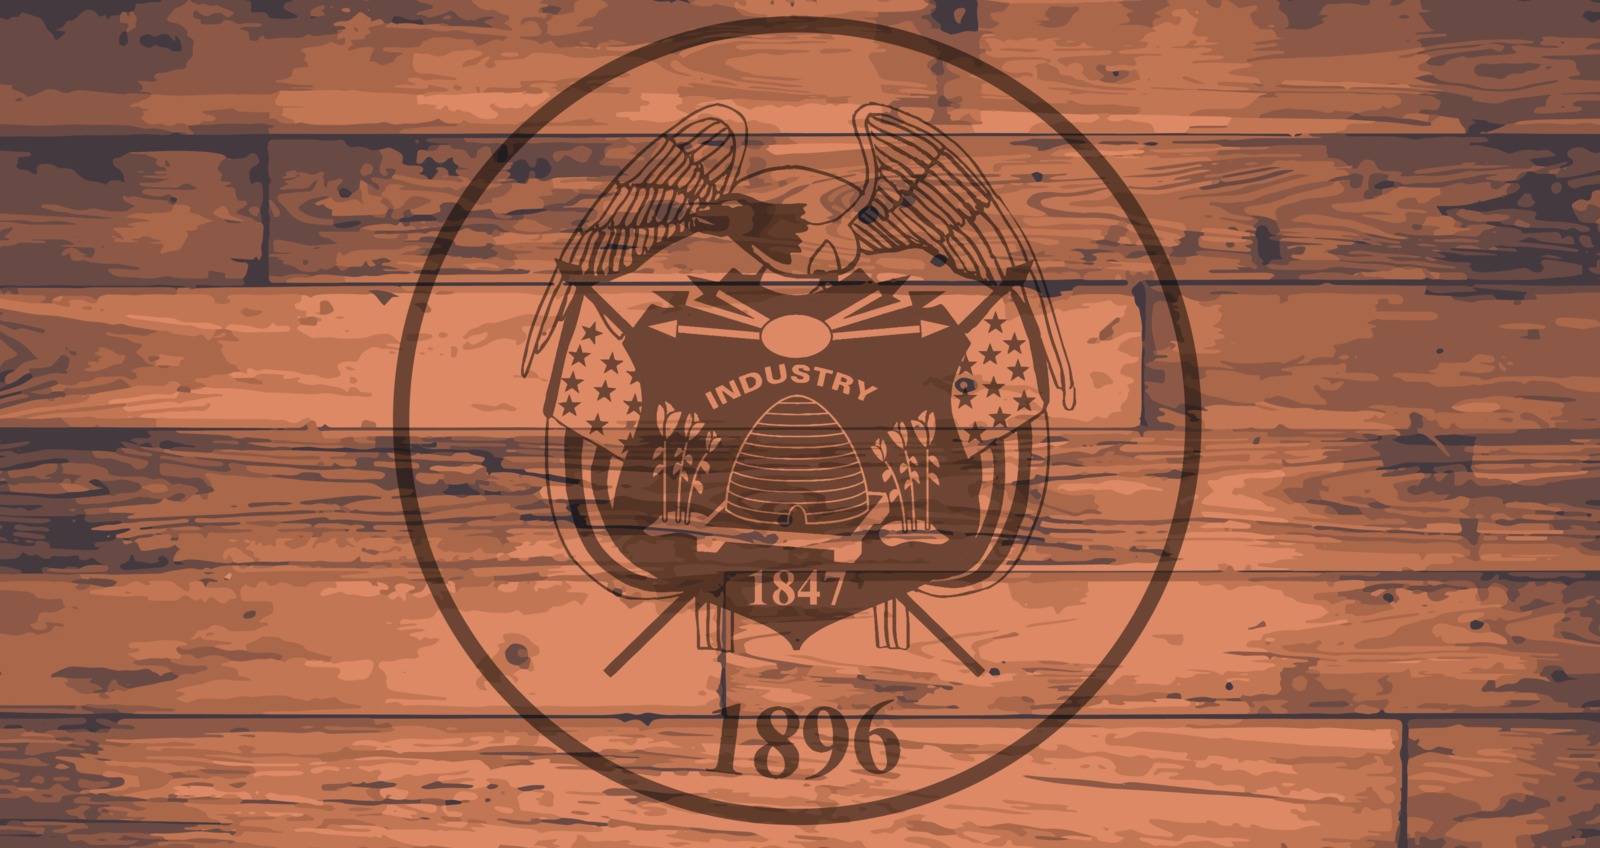 Utah State Flag branded onto wooden planks